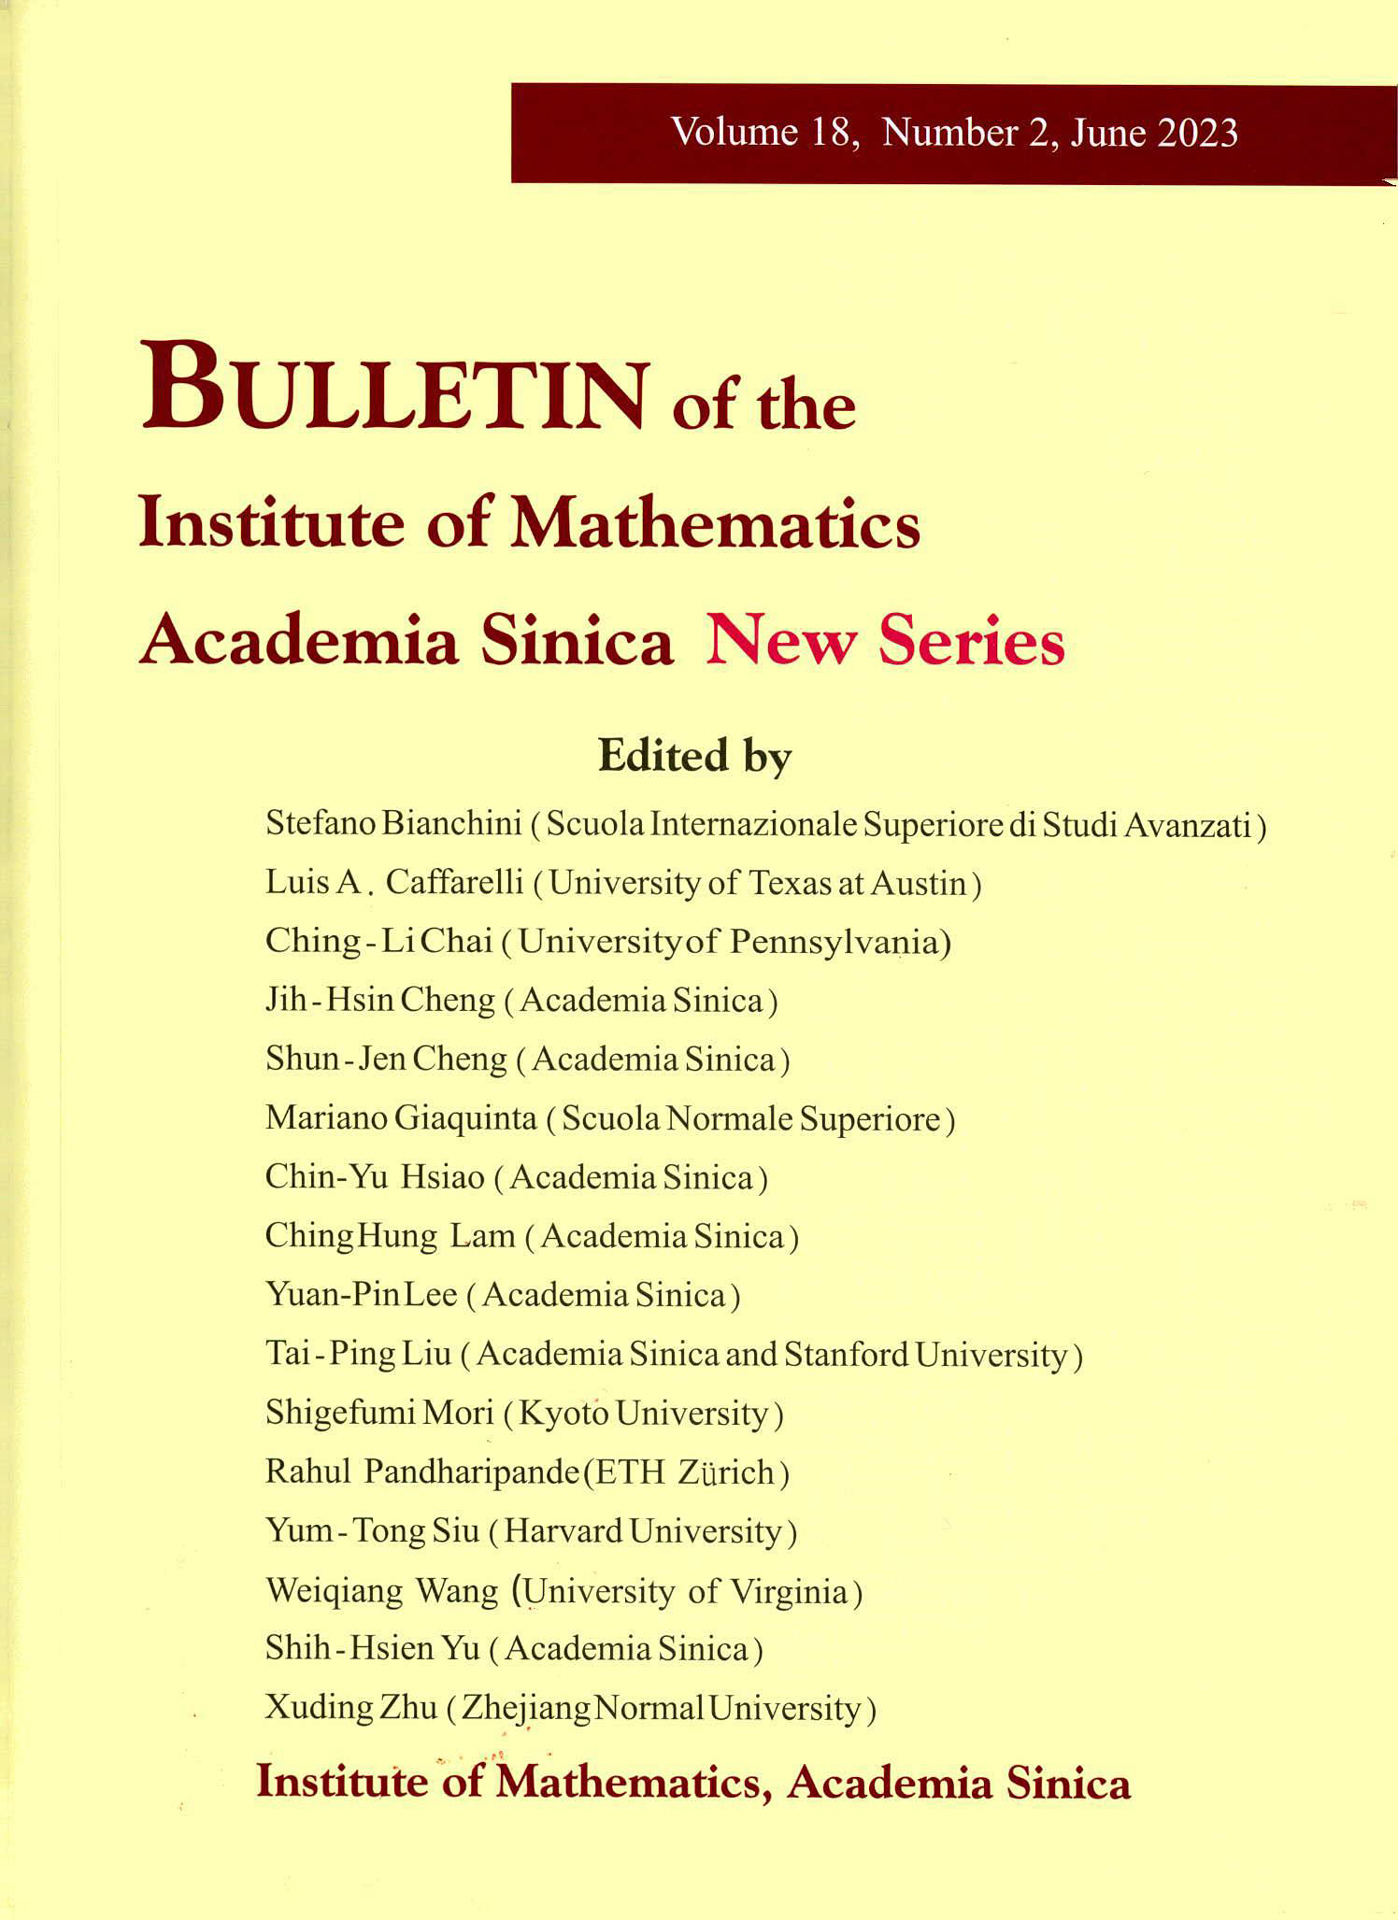 期刊出版〉《數學集刊》第 18 卷第 2 期已出版